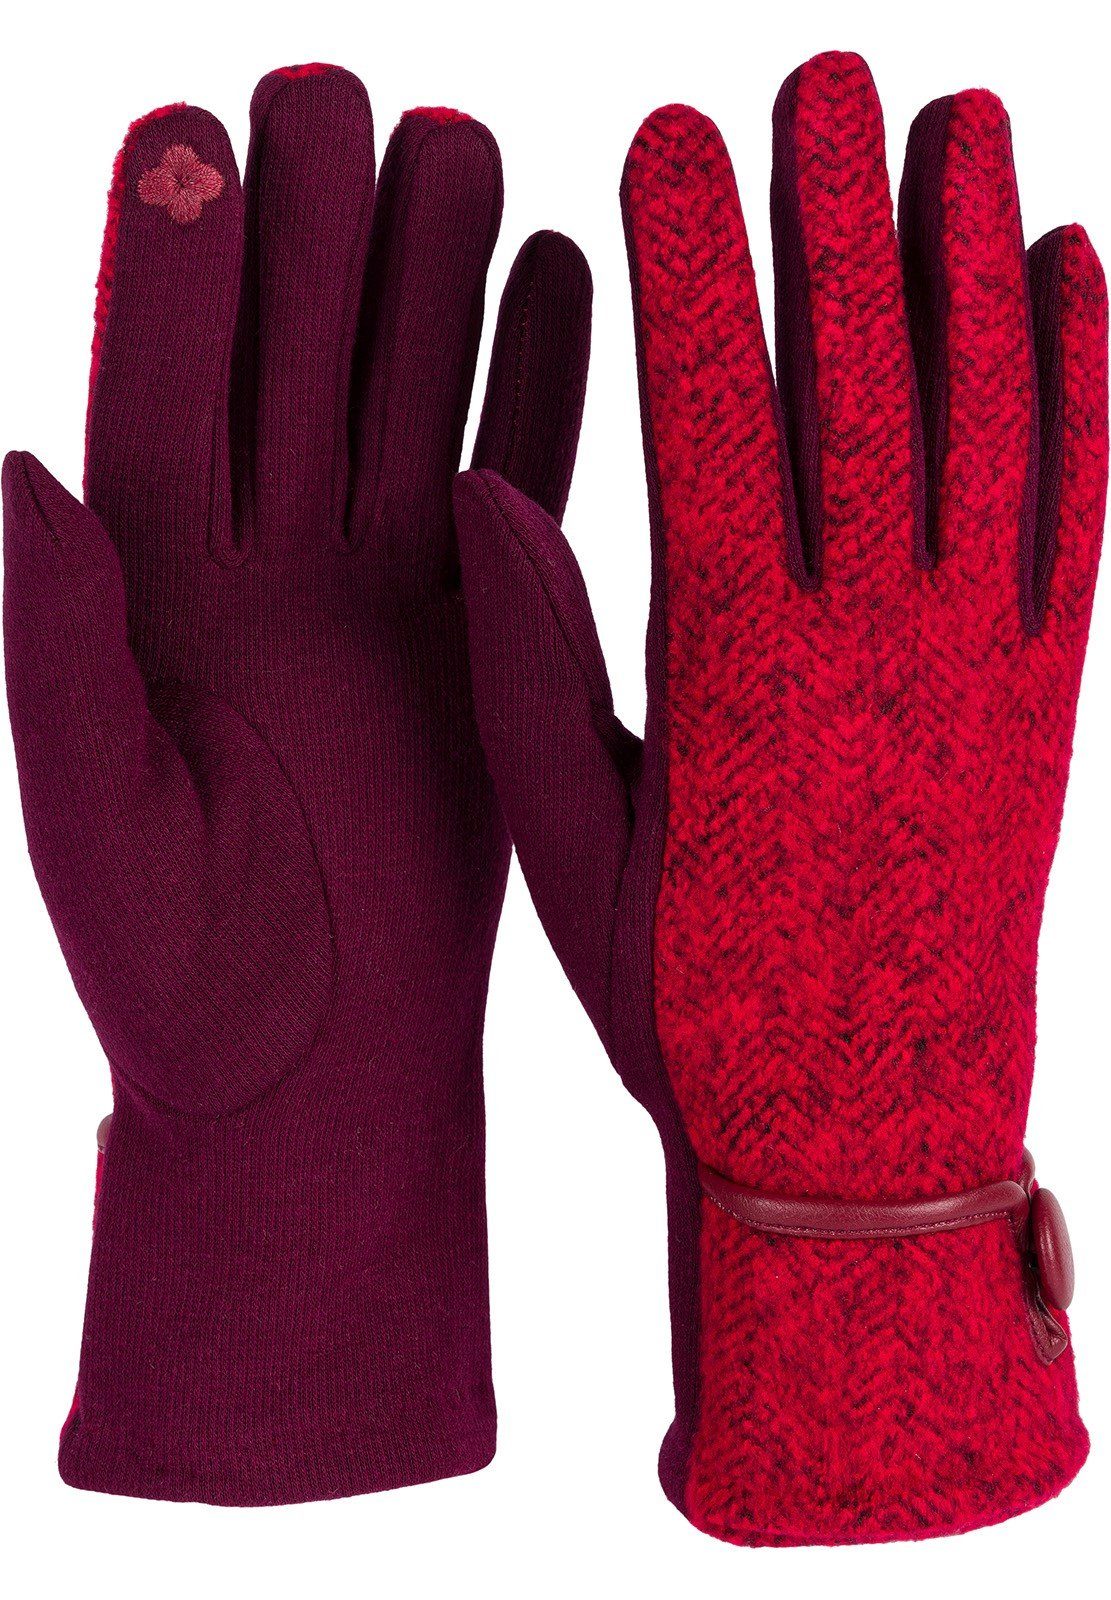 Handschuhe Bordeaux-Rot Fleecehandschuhe Fischgrät Muster Touchscreen styleBREAKER